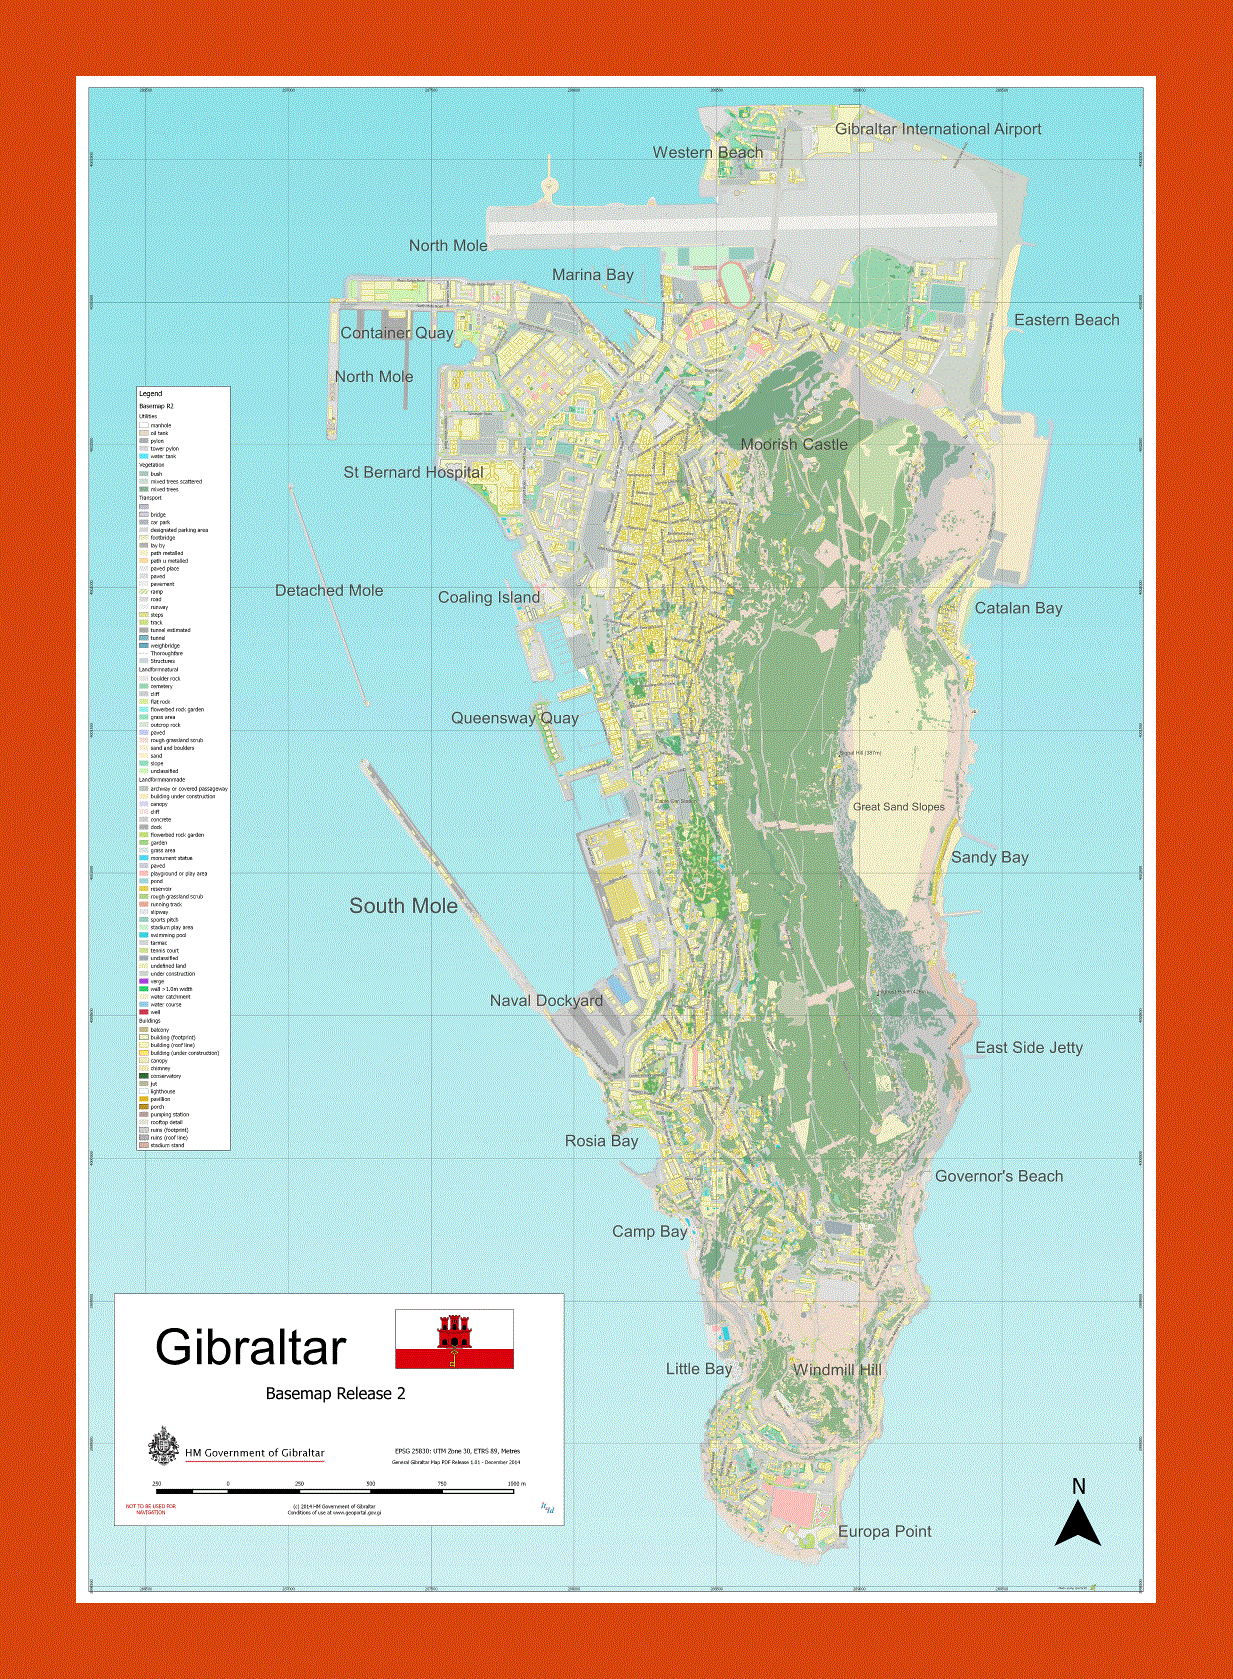 Full map of Gibraltar